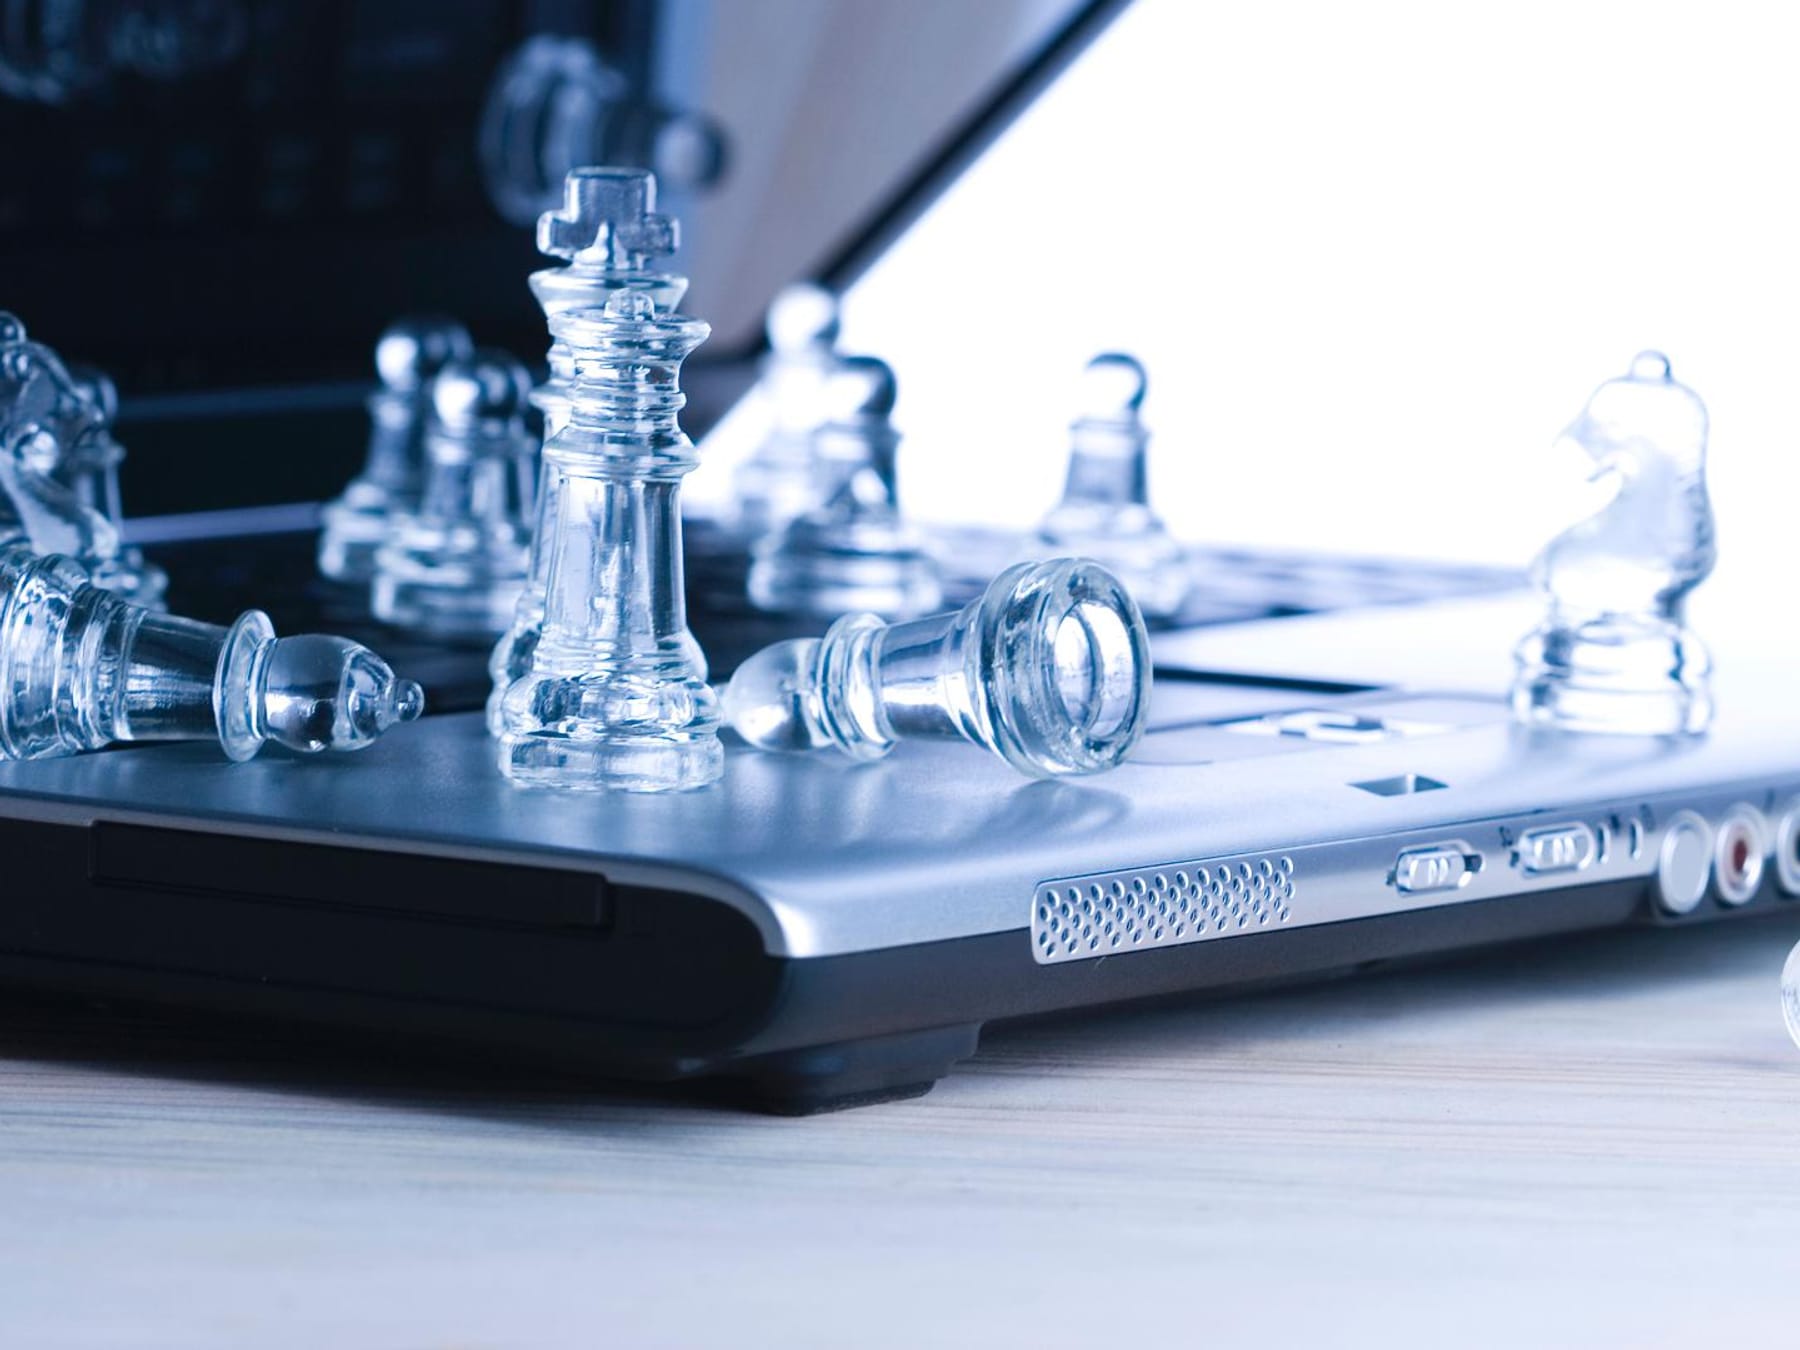 Schach online spielen 7 bekannte Anbieter im Überblick